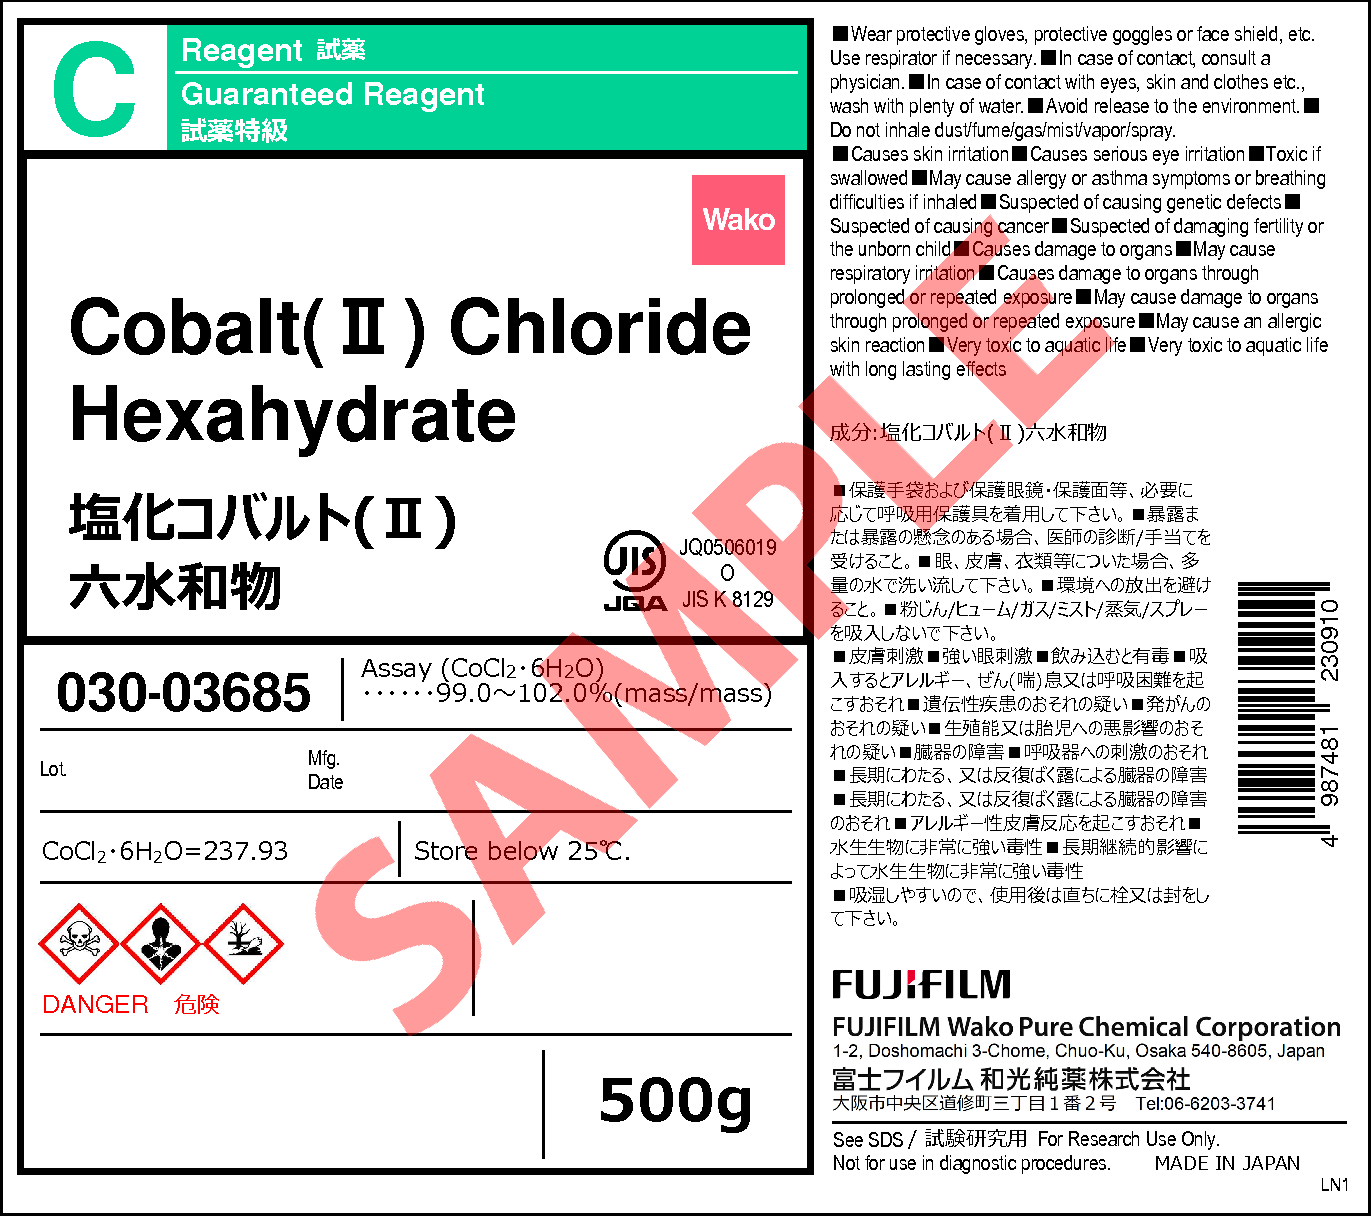 7791 13 1 塩化コバルト Ii 六水和物 Cobalt Ii Chloride Hexahydrate 036 036 038 030 詳細情報 常用試薬 ラボウェア 試薬 富士フイルム和光純薬